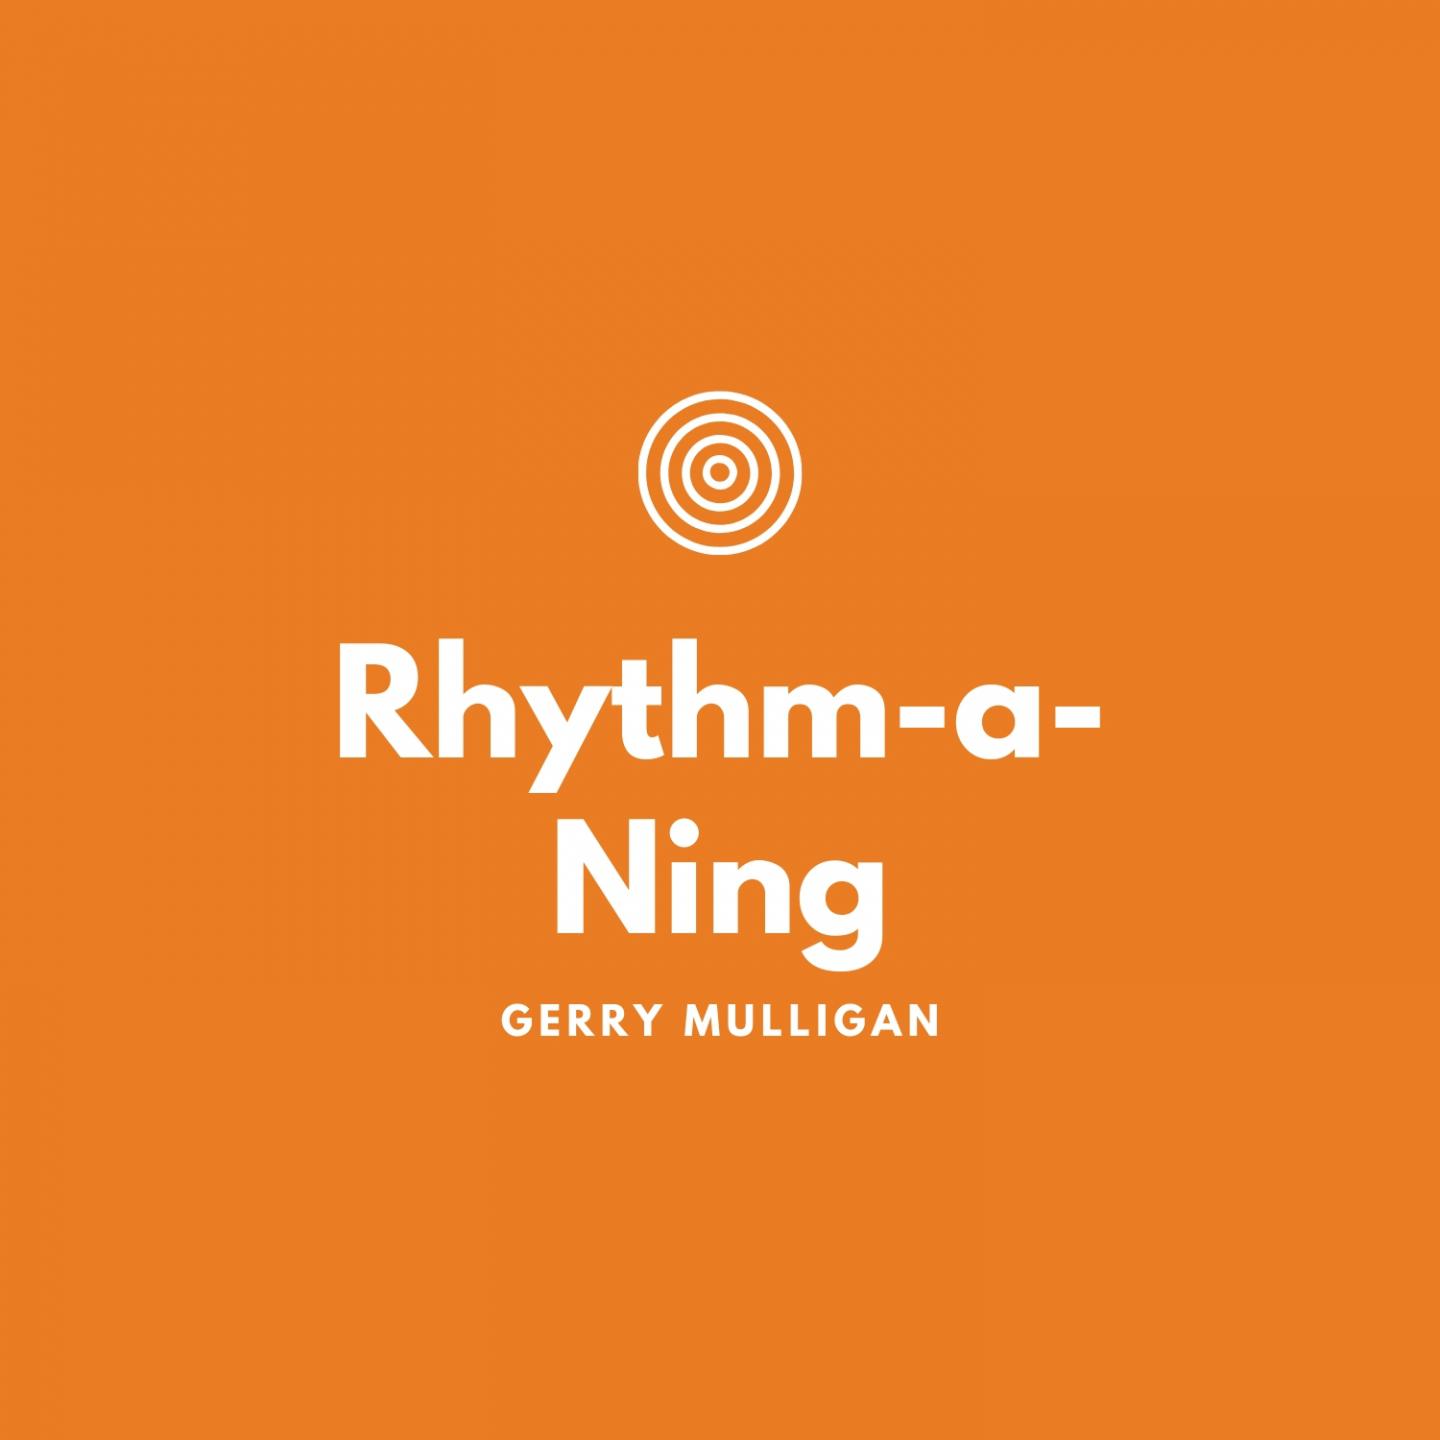 Rhythm-a-Ning